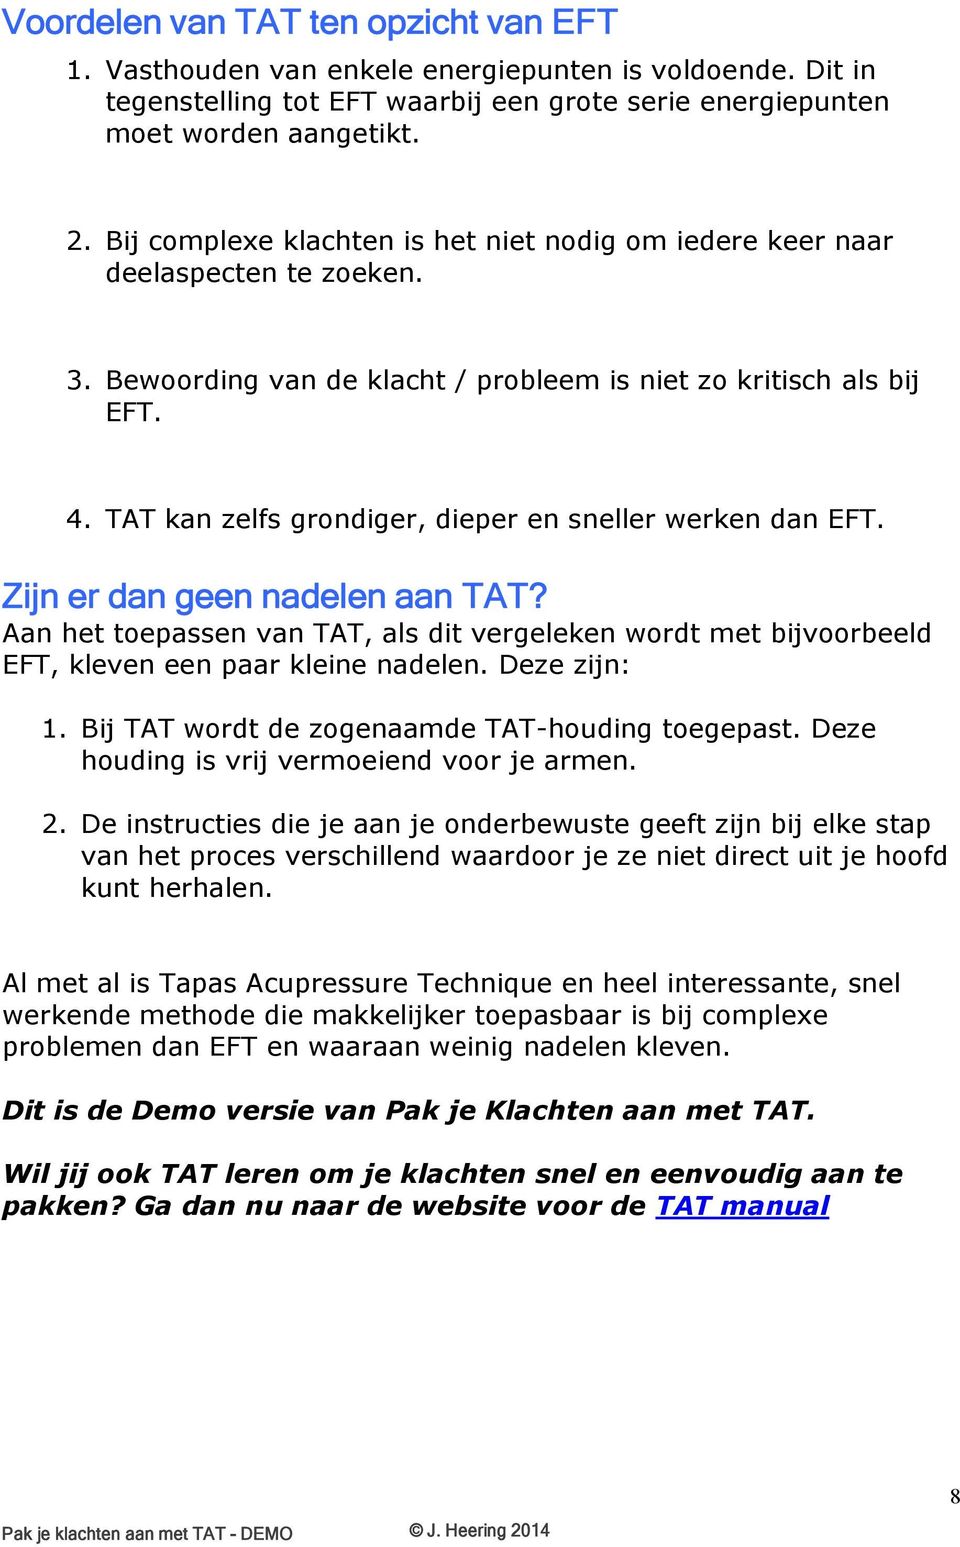 TAT kan zelfs grondiger, dieper en sneller werken dan EFT. Zijn er dan geen nadelen aan TAT? Aan het toepassen van TAT, als dit vergeleken wordt met bijvoorbeeld EFT, kleven een paar kleine nadelen.